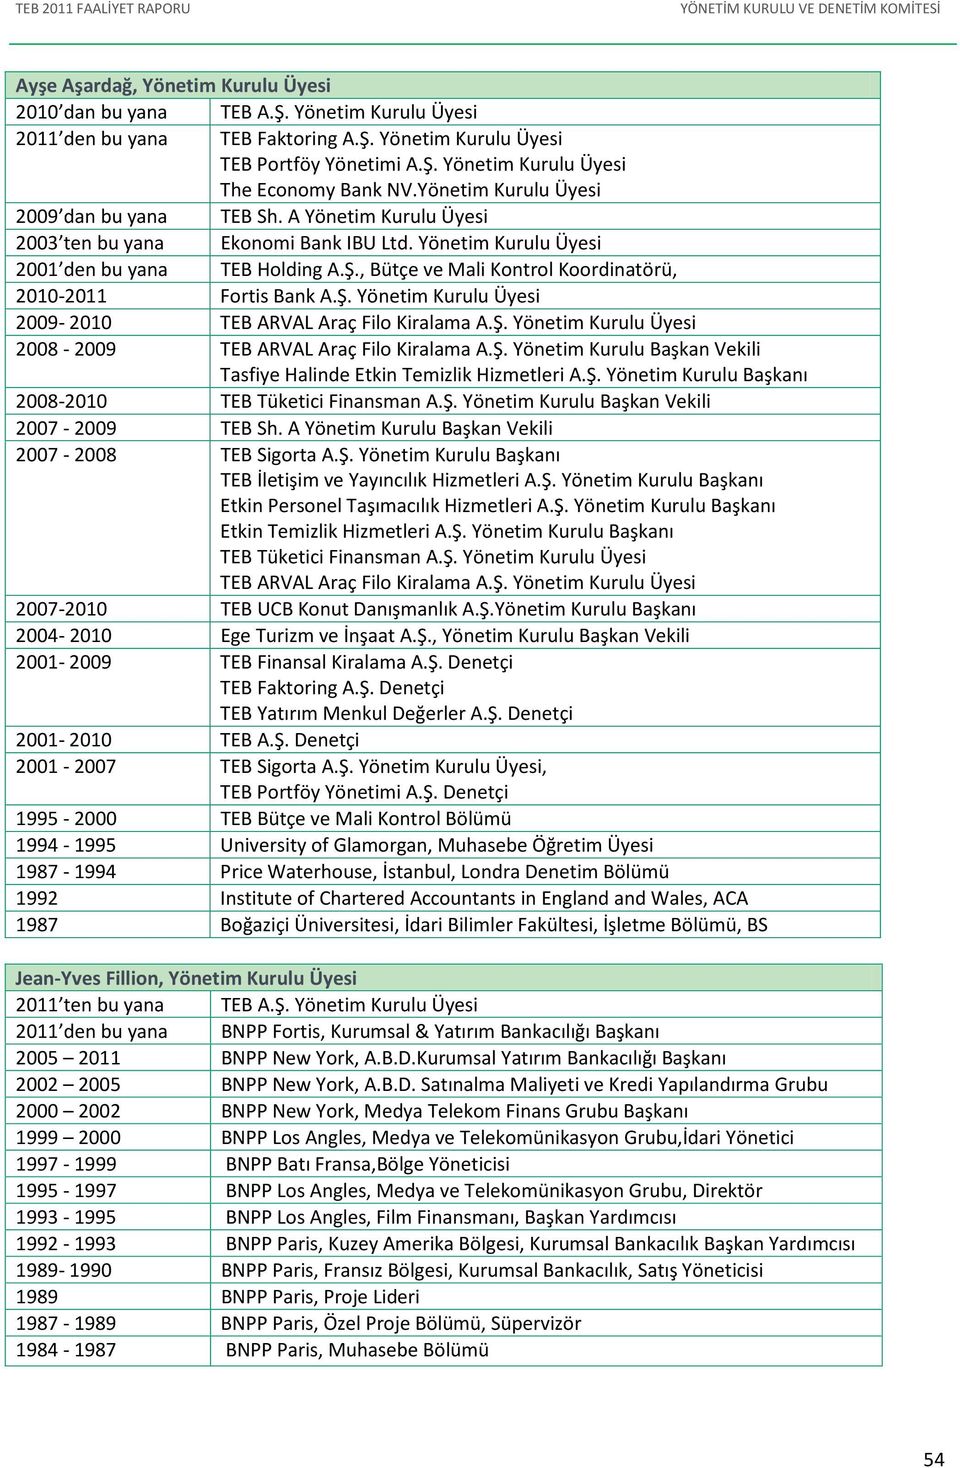 , Bütçe ve Mali Kontrol Koordinatörü, 2010-2011 Fortis Bank A.Ş. Yönetim Kurulu si 2009-2010 TEB ARVAL Araç Filo Kiralama A.Ş. Yönetim Kurulu si 2008-2009 TEB ARVAL Araç Filo Kiralama A.Ş. Yönetim Kurulu Başkan Vekili Tasfiye Halinde Etkin Temizlik Hizmetleri A.